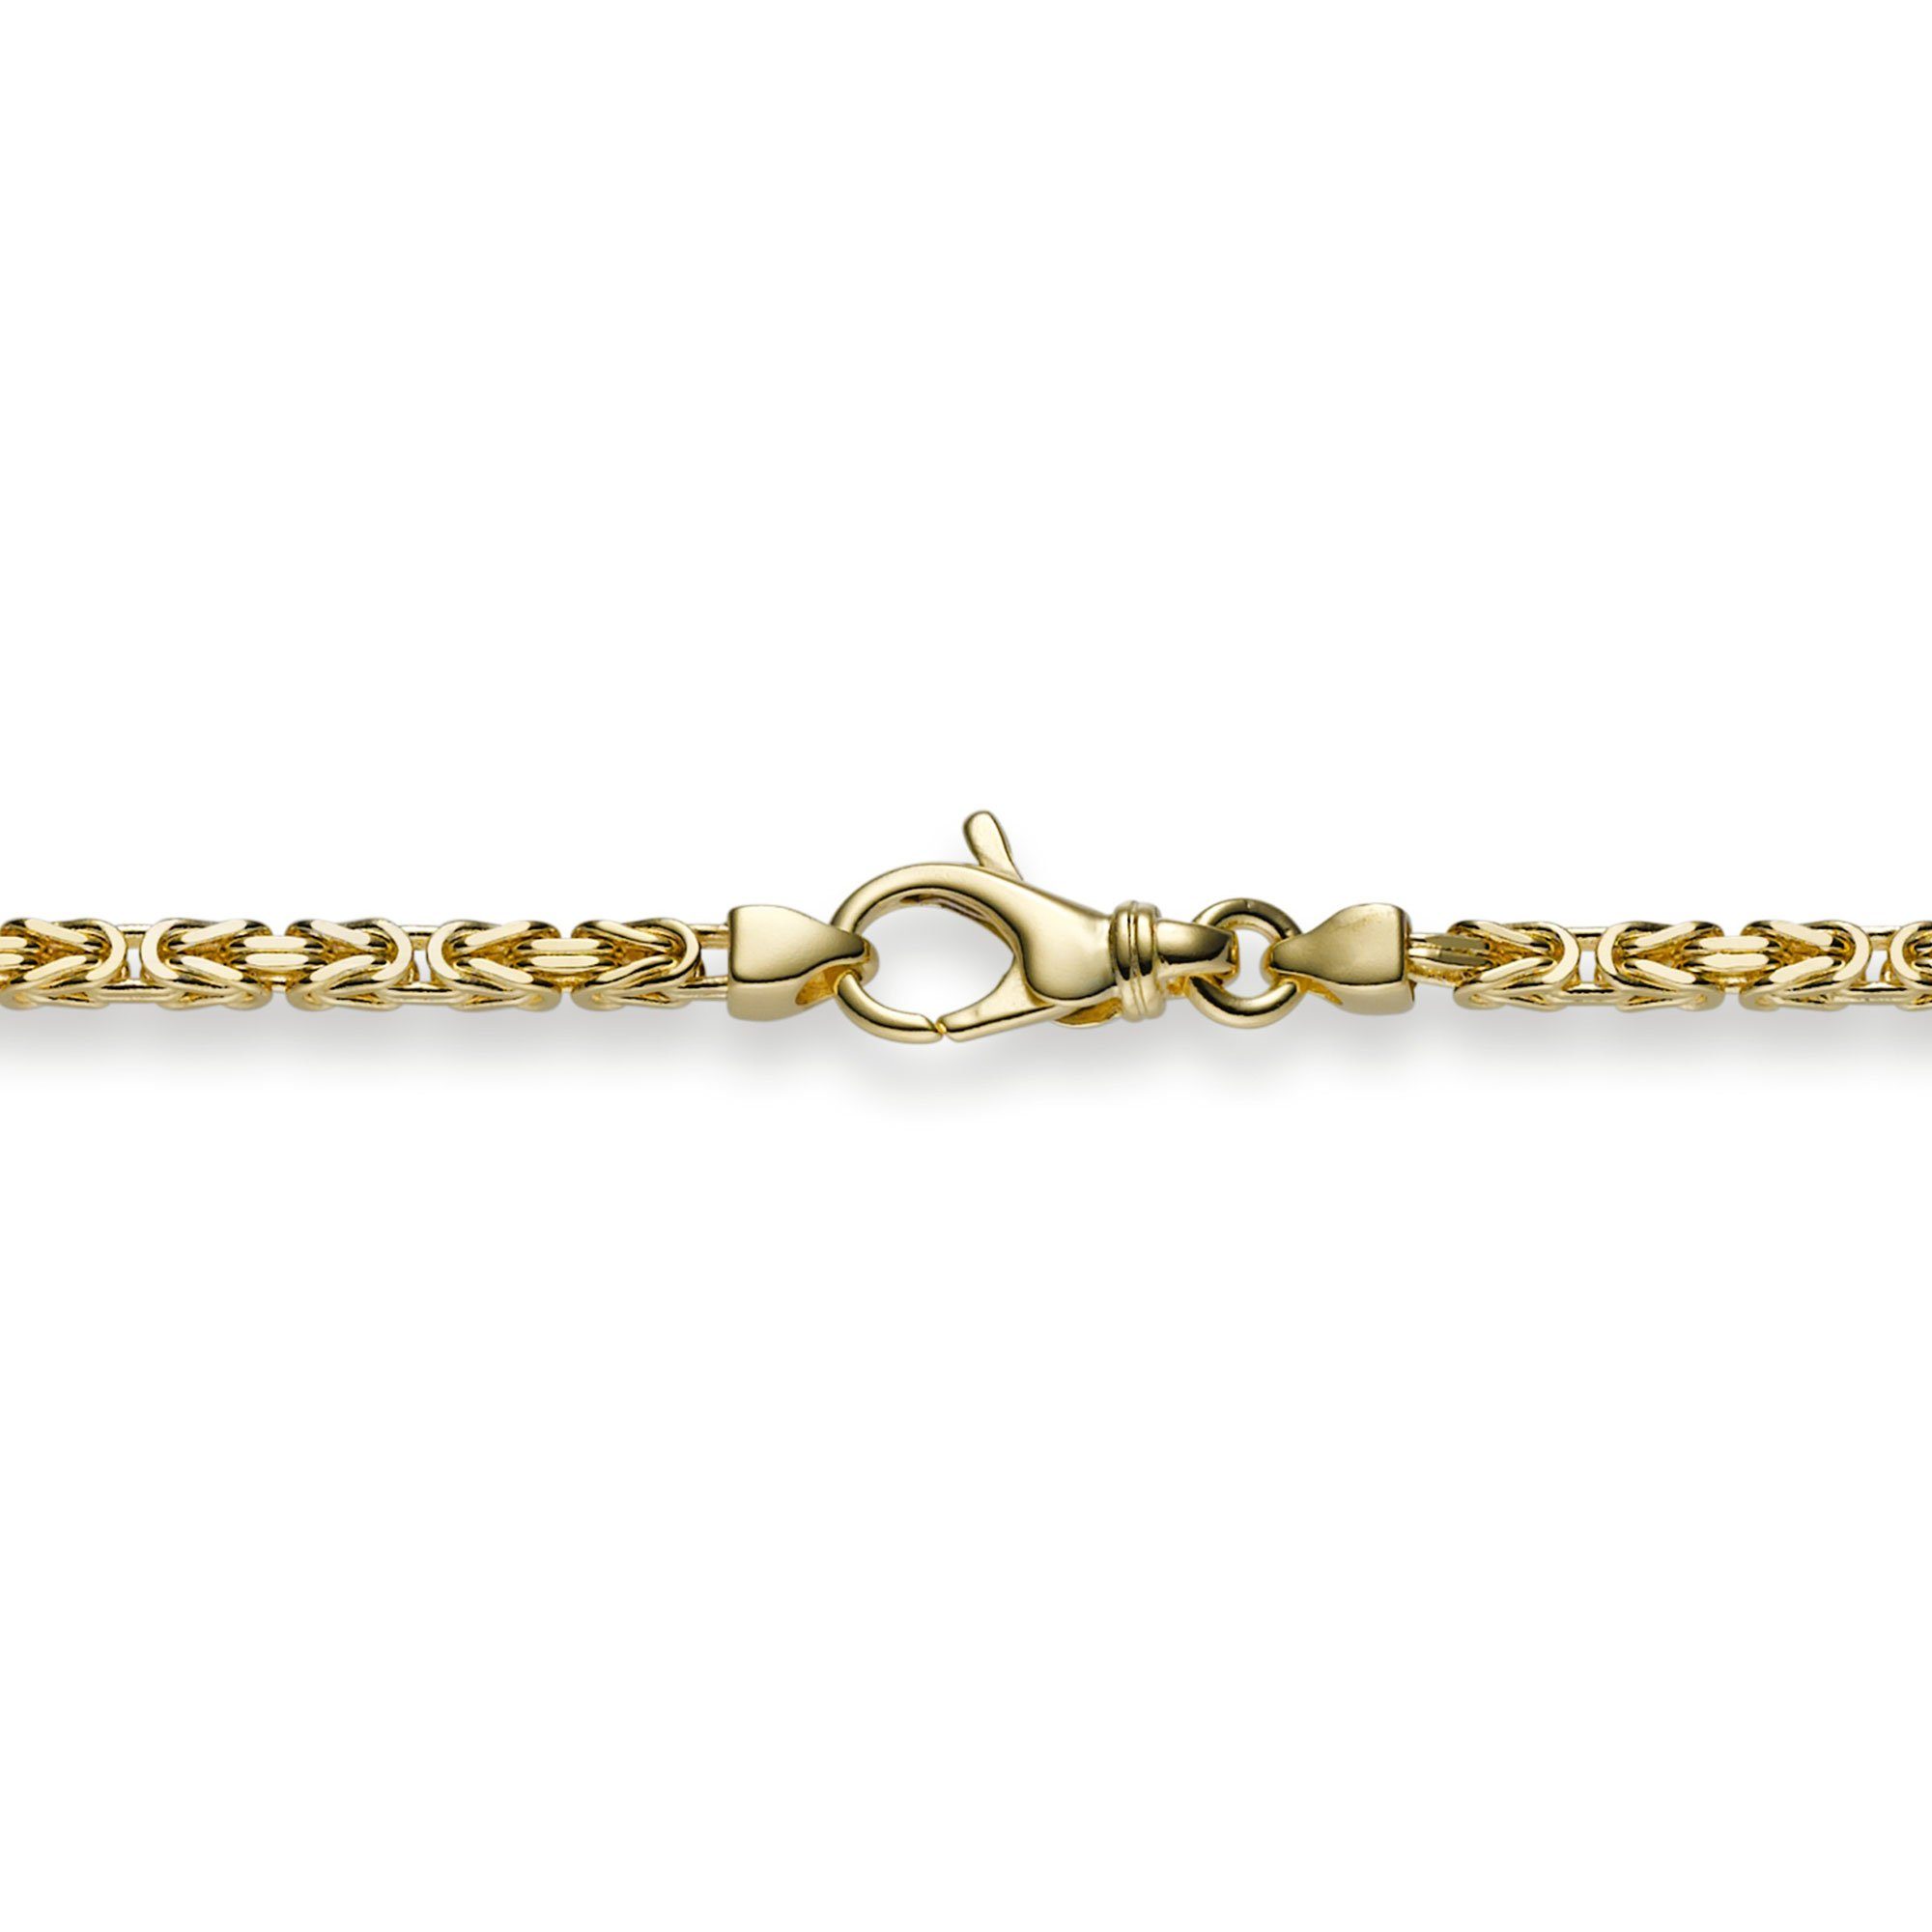 HOPLO Goldarmband Goldkette Königskette Länge 21cm - Breite 2,5mm - 750-18 Karat Gold